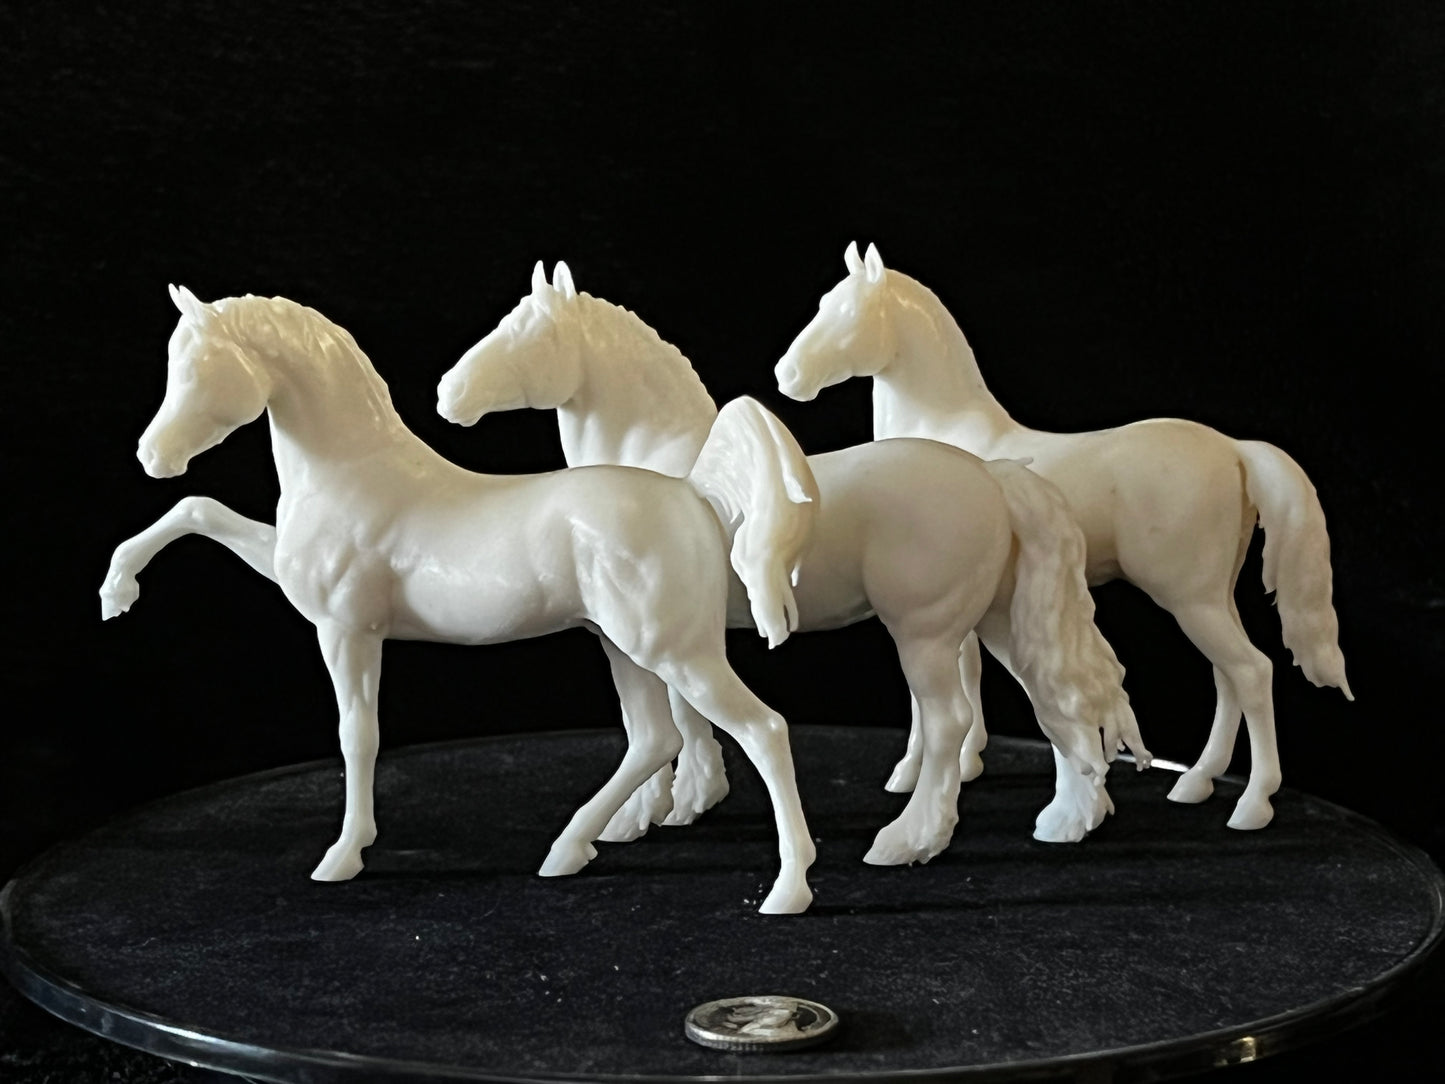 The three Amigos - White resin ready to paint